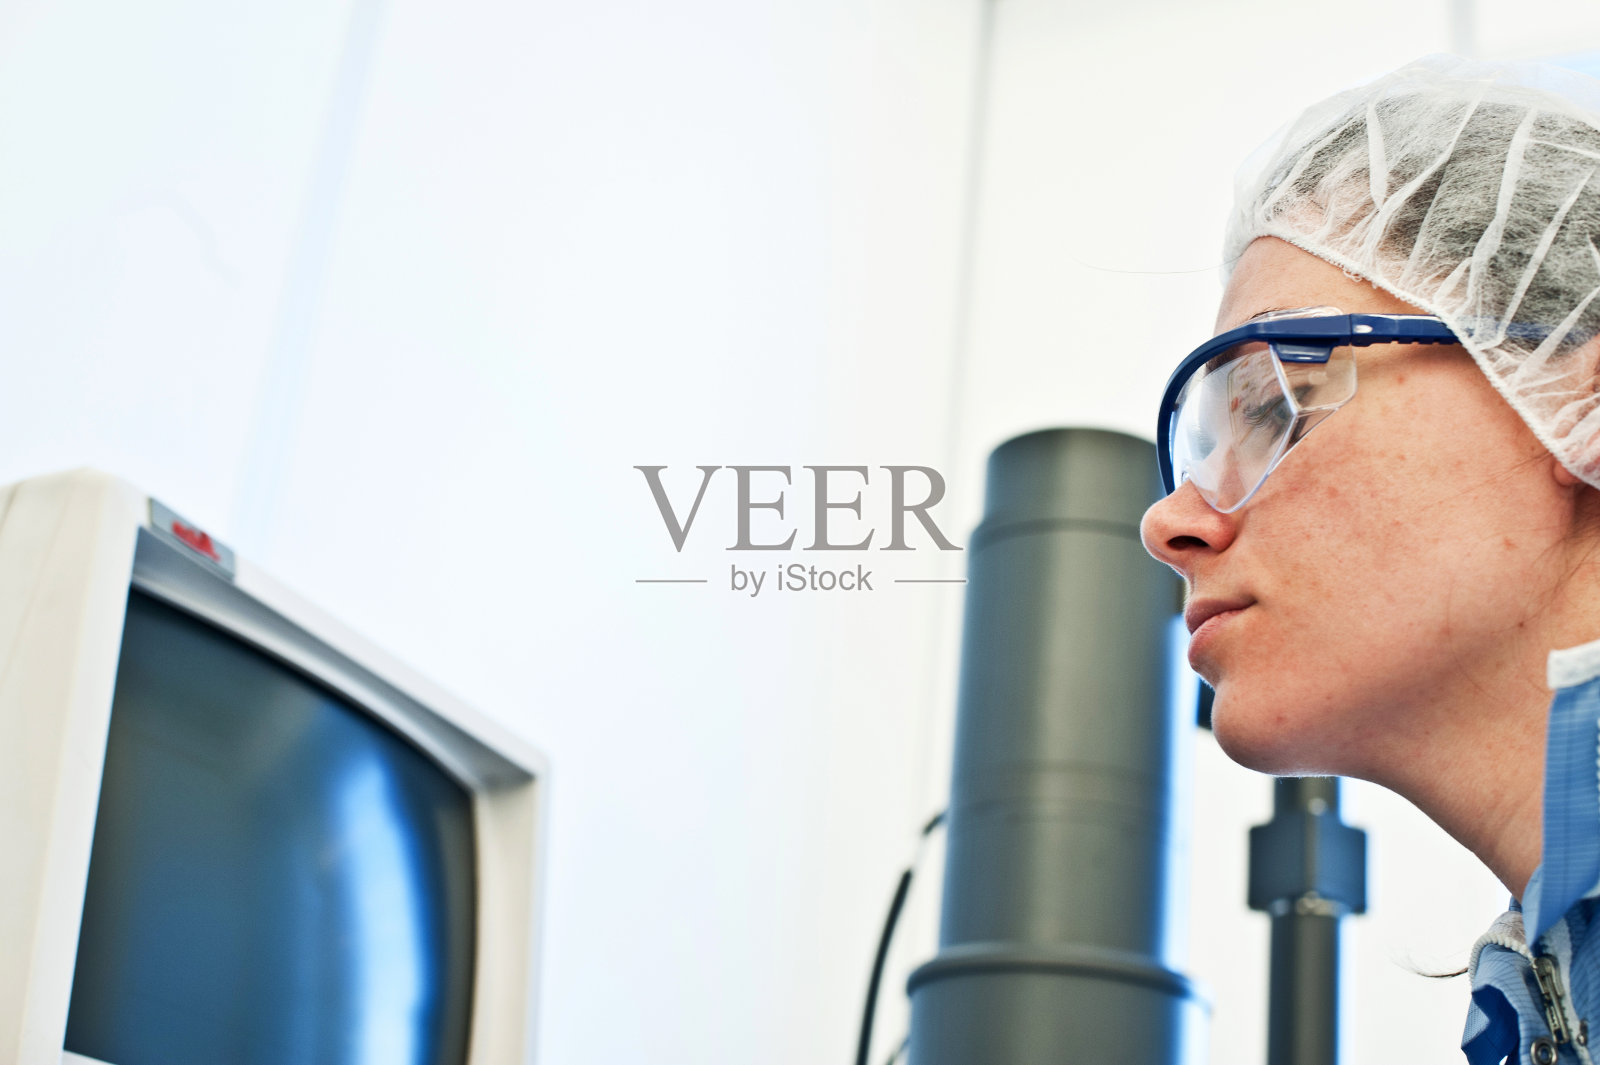 研究与开发:女科学家在高分辨率扫描显微镜(SEM)实验室/洁净室控制台工作照片摄影图片